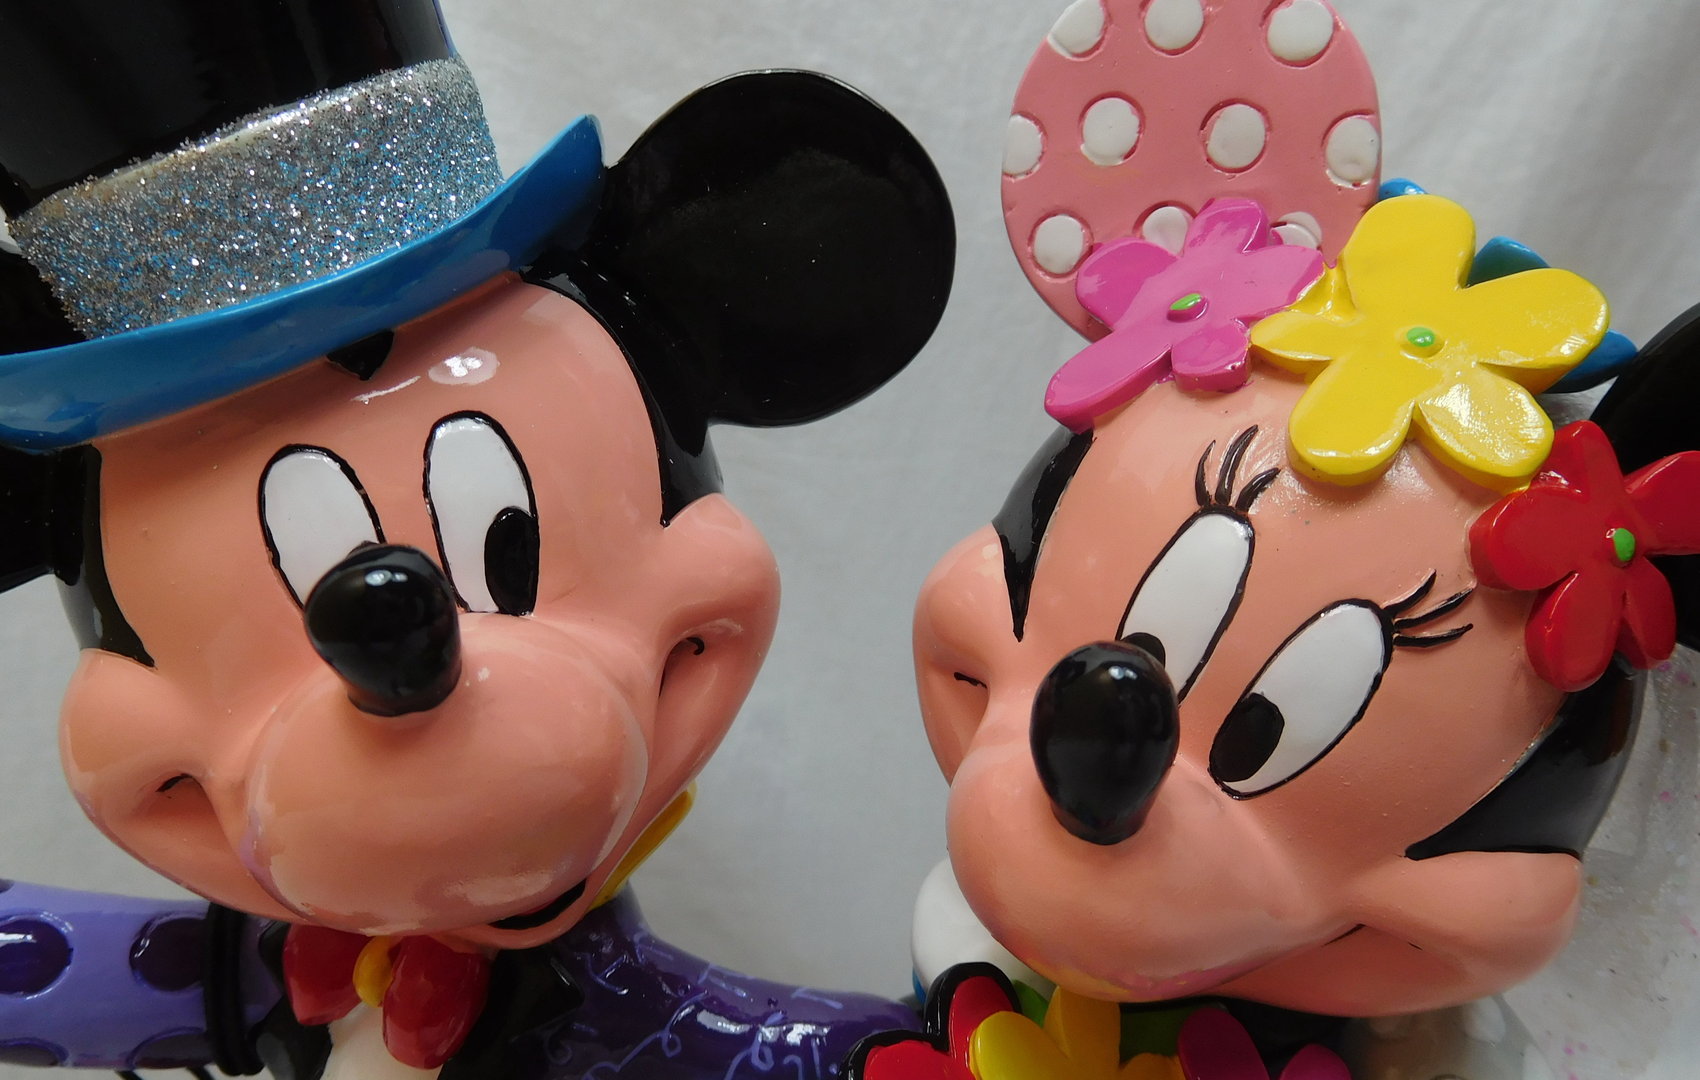 Offiziell Lizenziert Disney Britto Mickey und Minnie Maus Hochzeit Figur